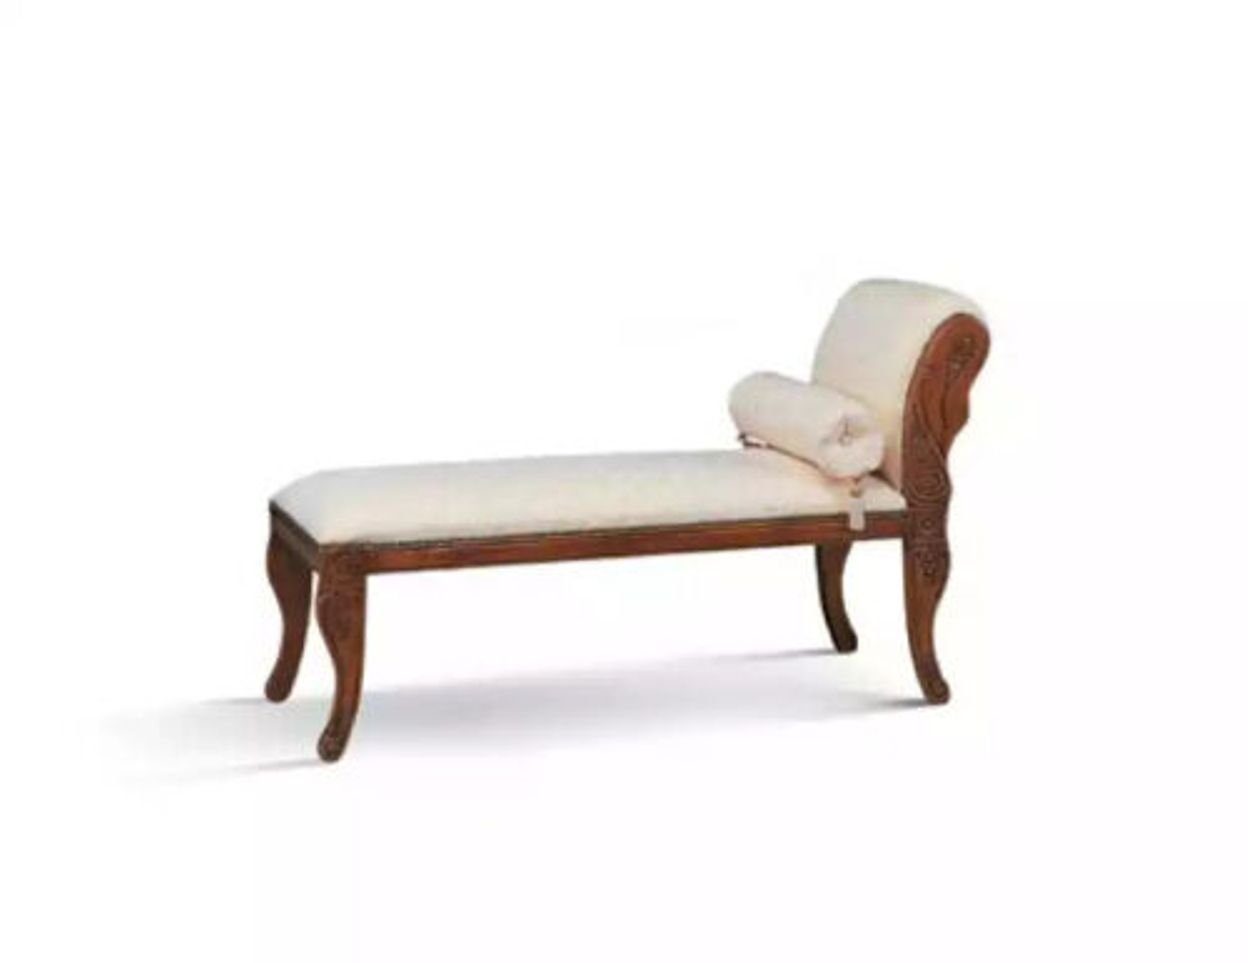 Möbel Neu, Sofa Liege Chaiselongue Italy Made Italienische Teile, JVmoebel Relax Klassisch Chaiselounge Weiß 1 in